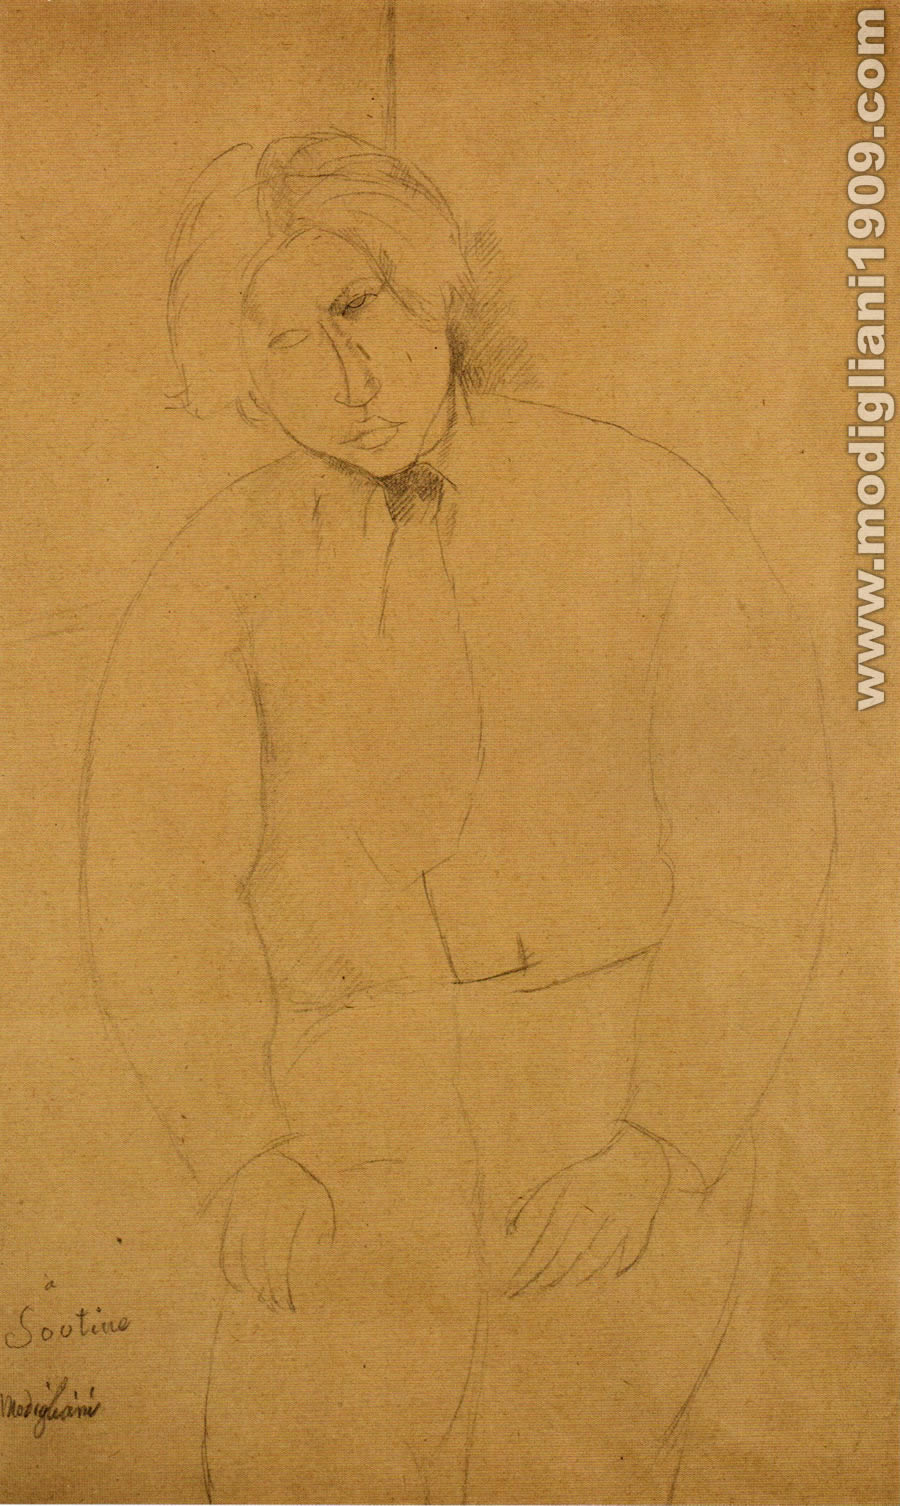 Amedeo Modigliani - Ritratto si Soutine 1916